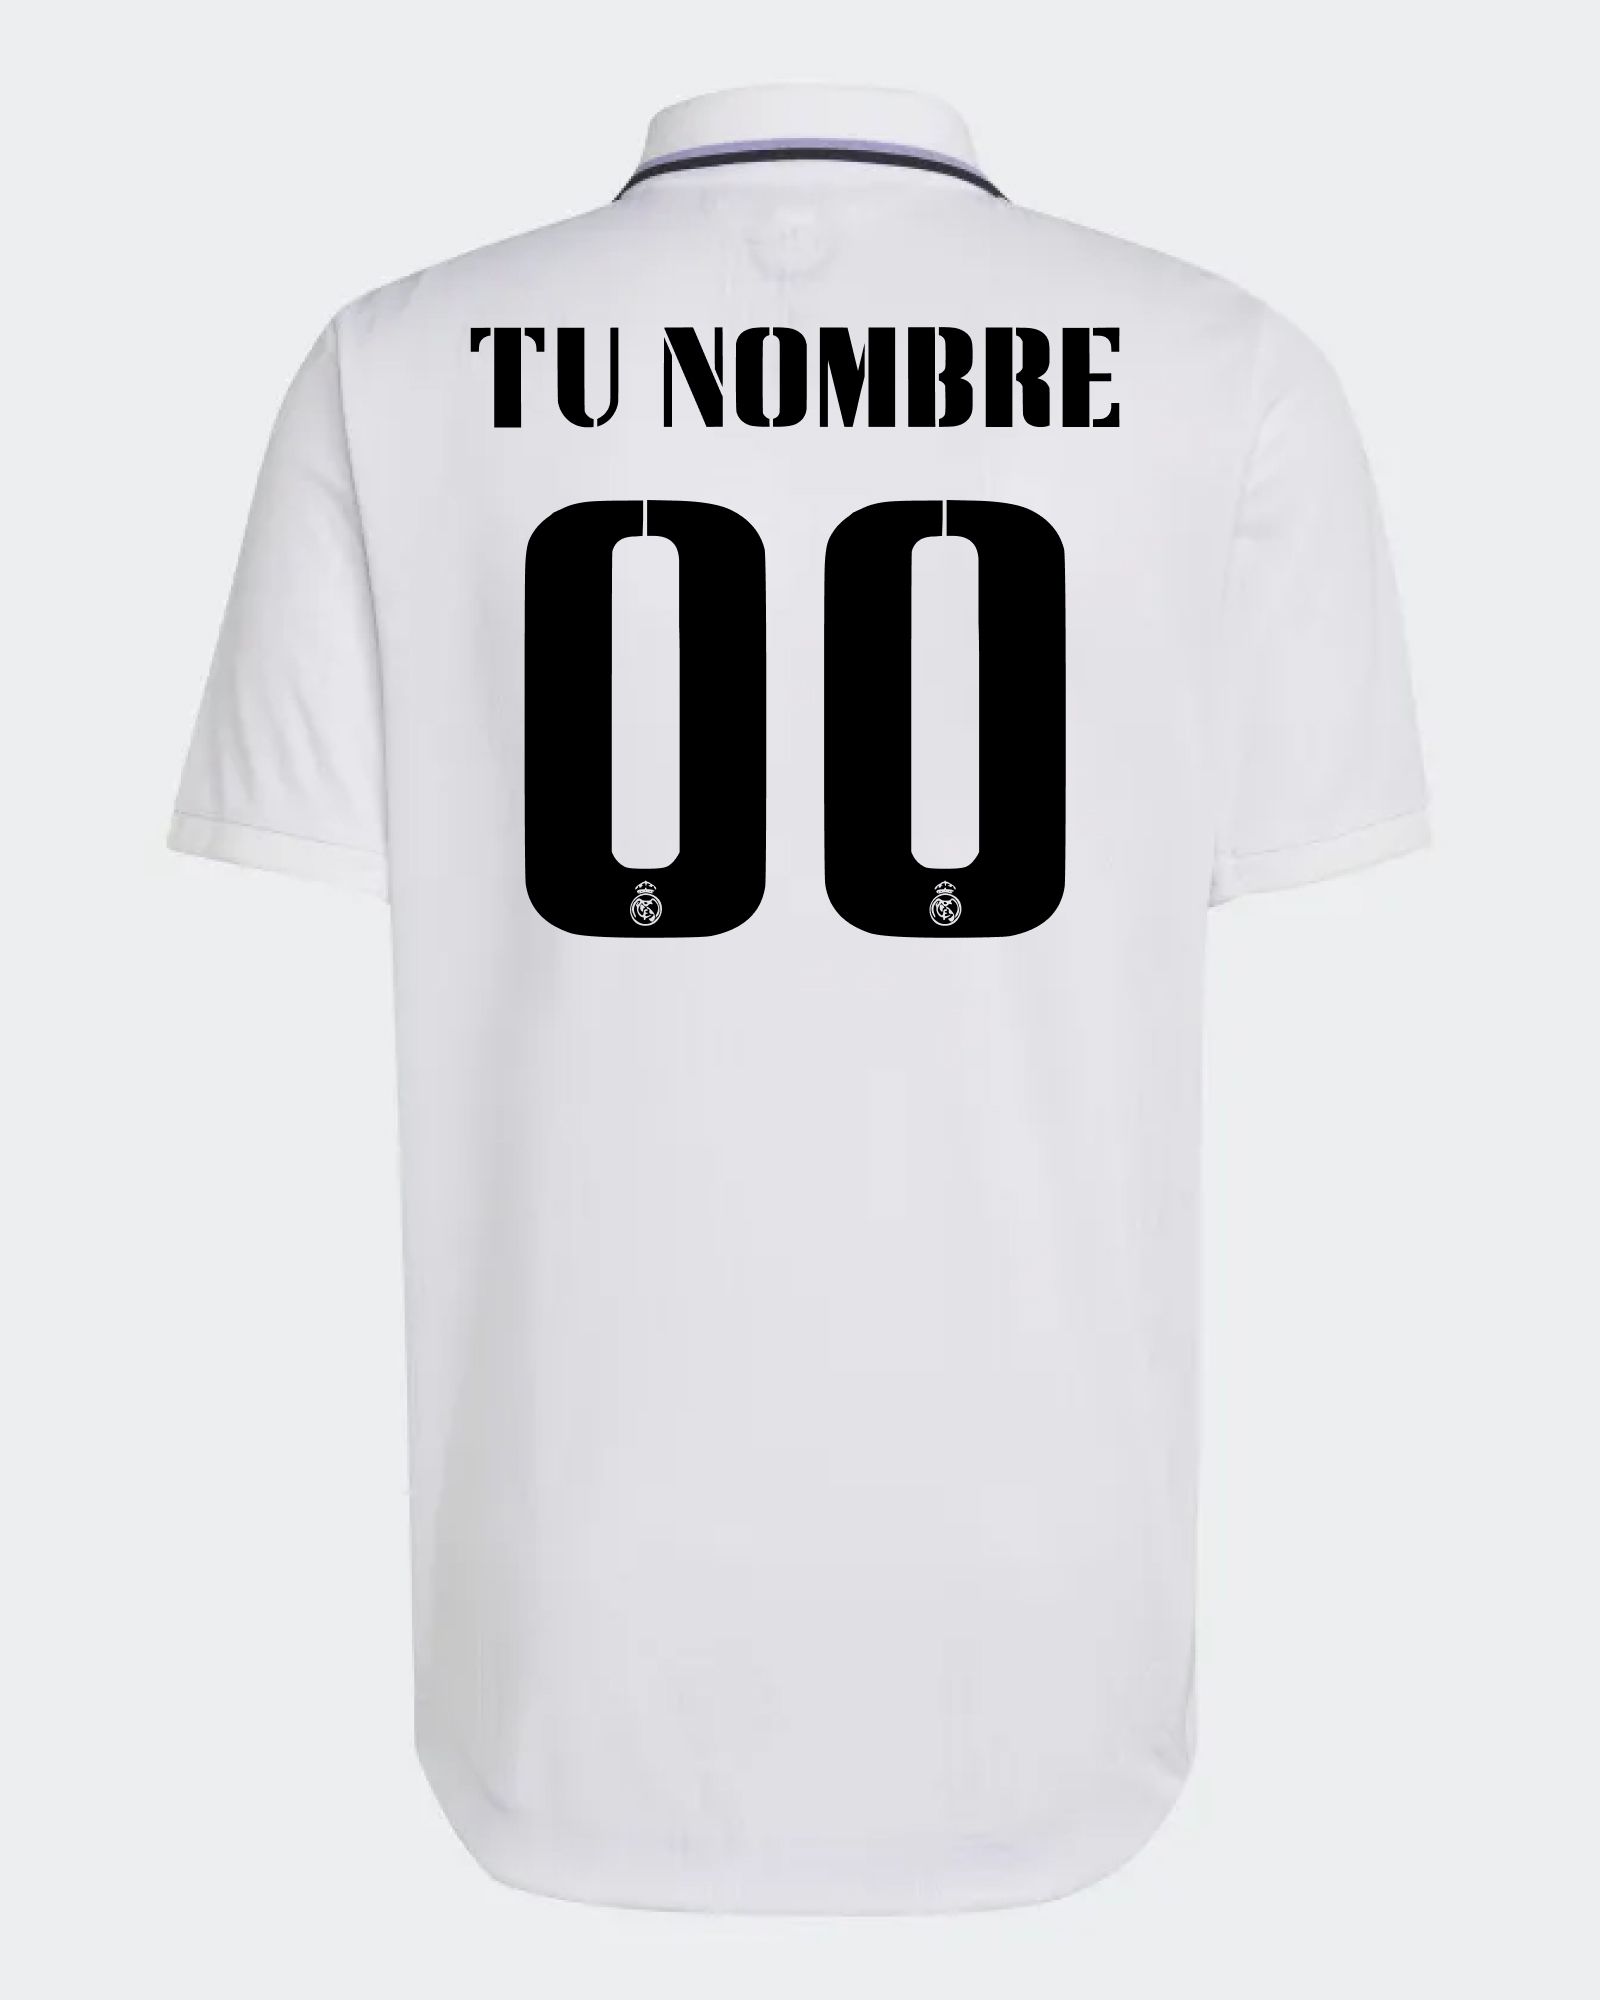 Personaliza tu camiseta de Real Madrid CF 2021/2022 con tu Nombre